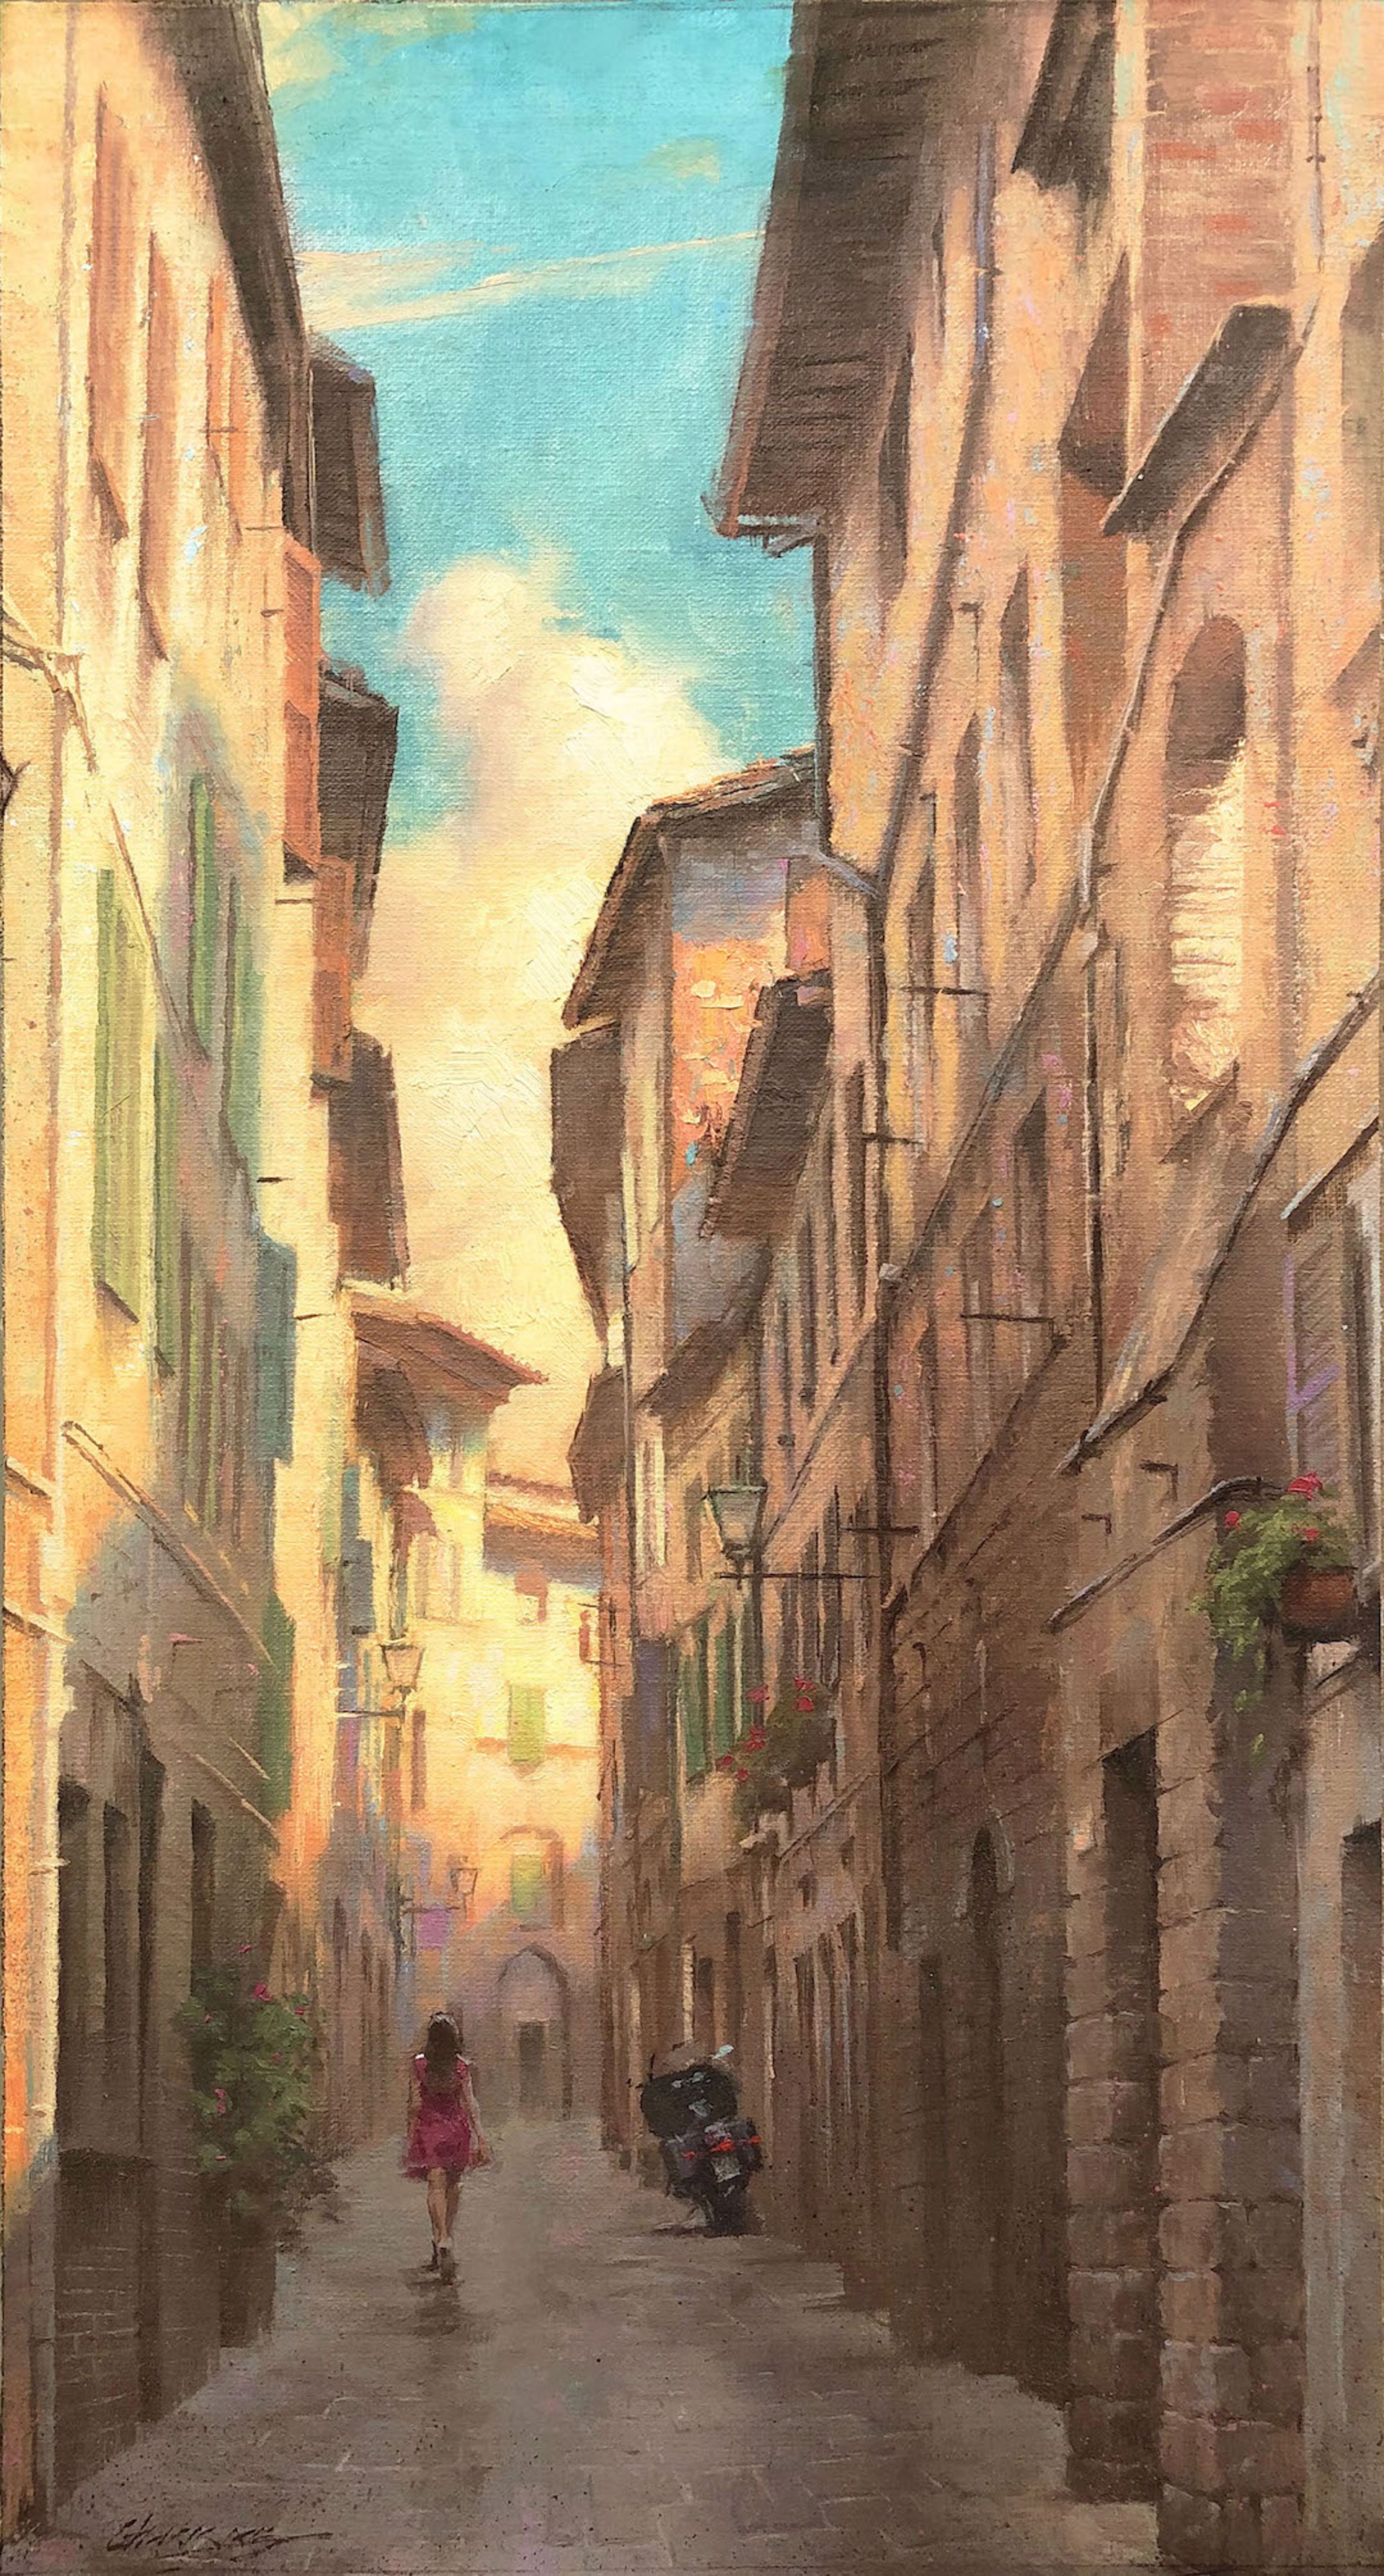 Footsteps in Siena by Gavin Glakas